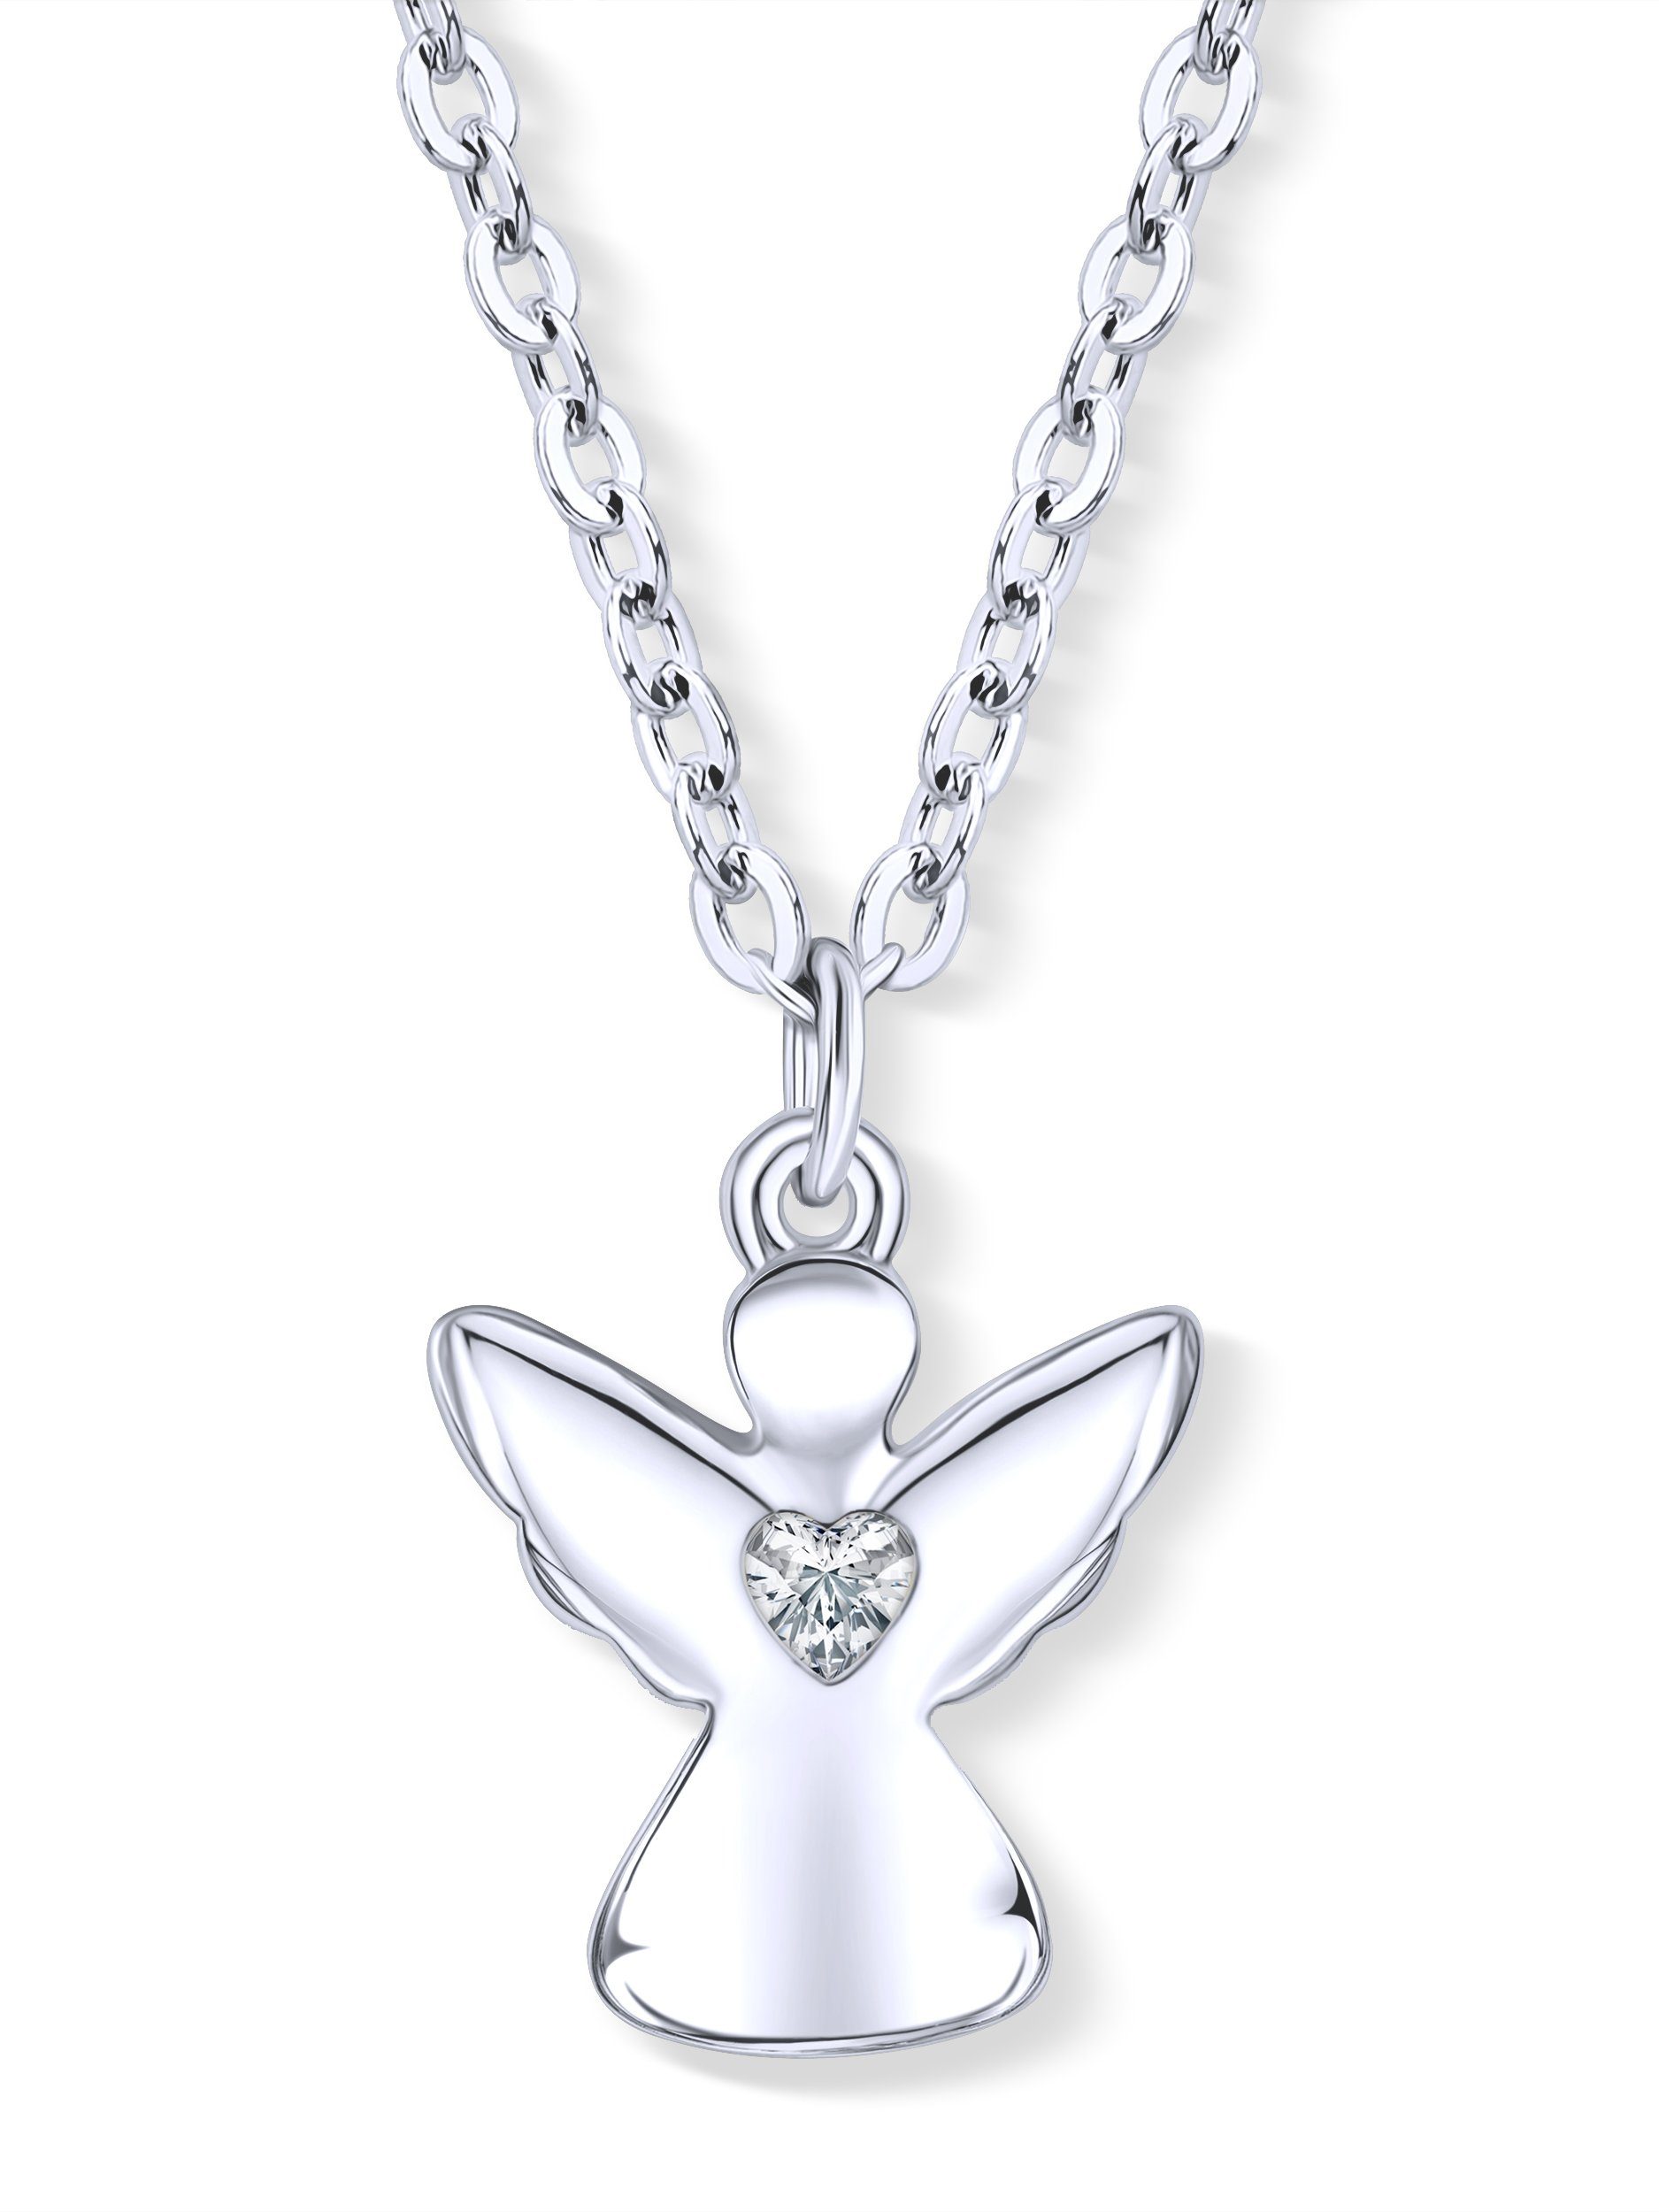 VIASOUL Kette mit Anhänger Engel Halskette mit Herz, Schutzengel Kette für Mädchen Kinder-Schmuck, stahlender Glanz Silber